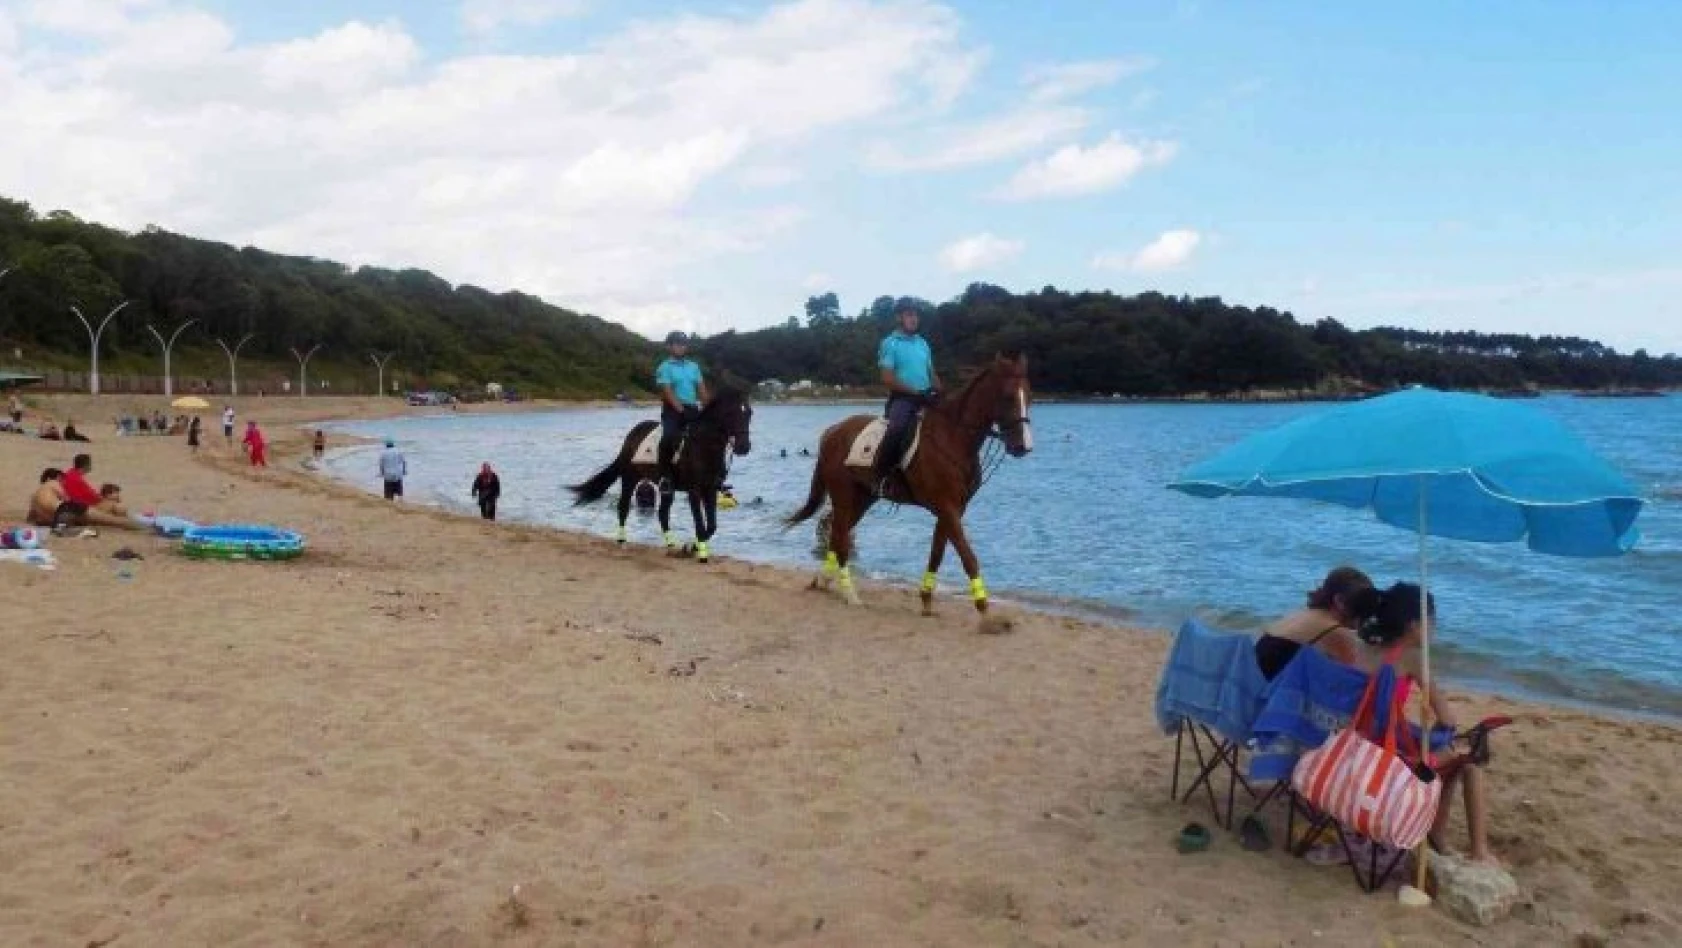 Jandarma atlı birliği, Kandıra sahillerinde sıkı denetim yapıyor